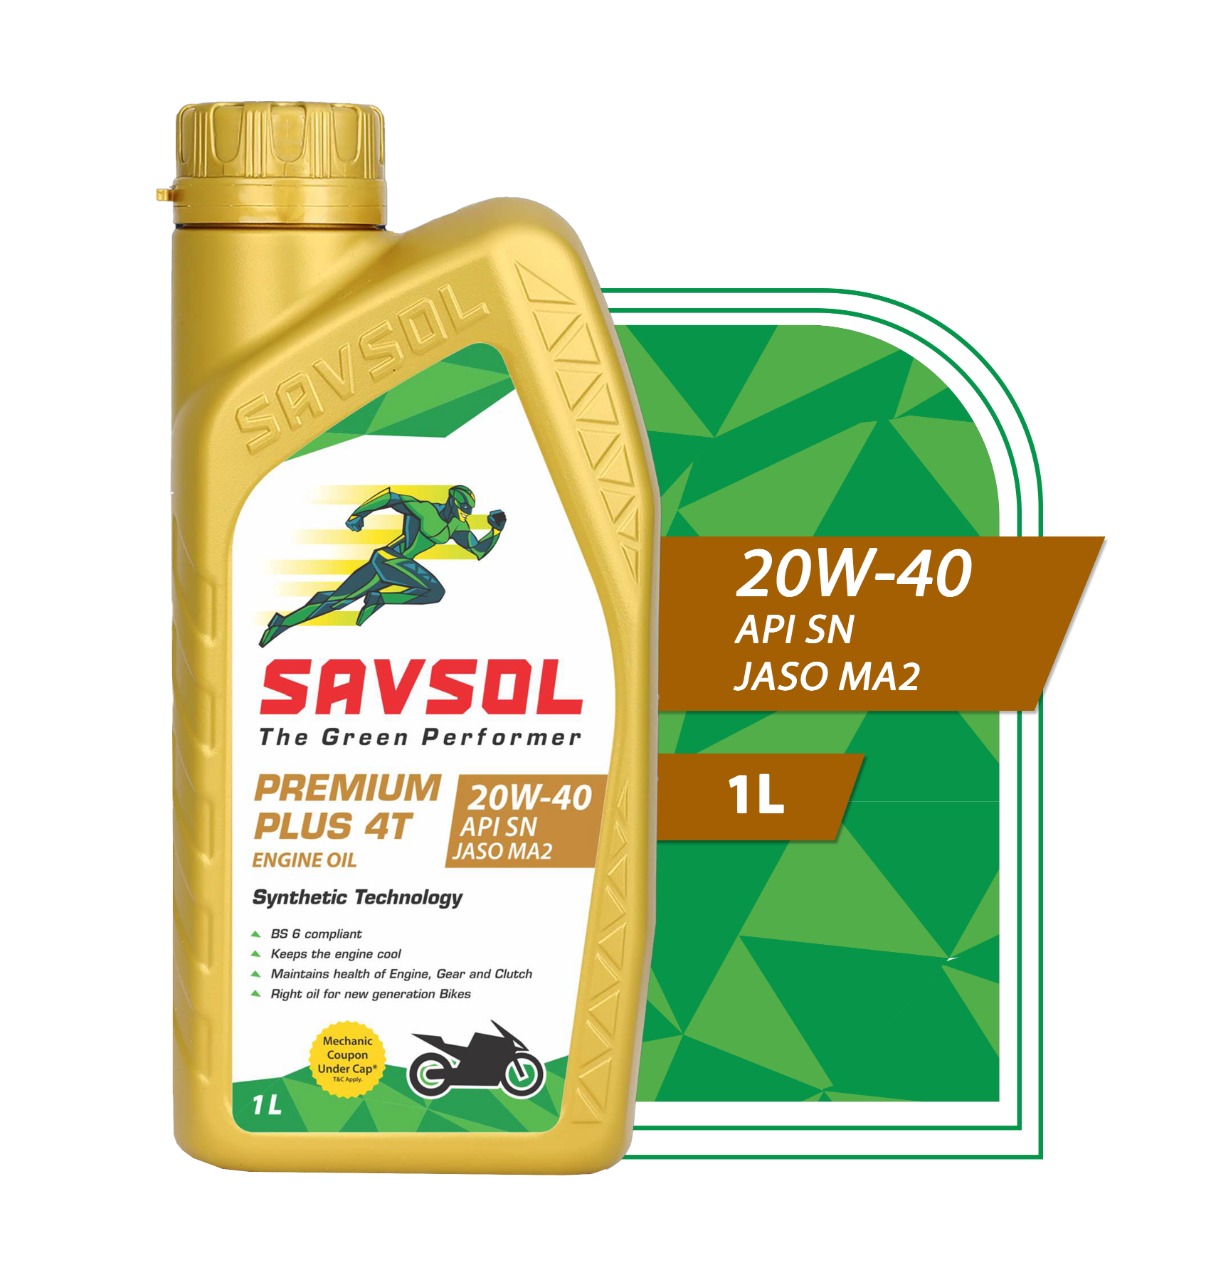 Savsol Premium Plus P4T 20W-40